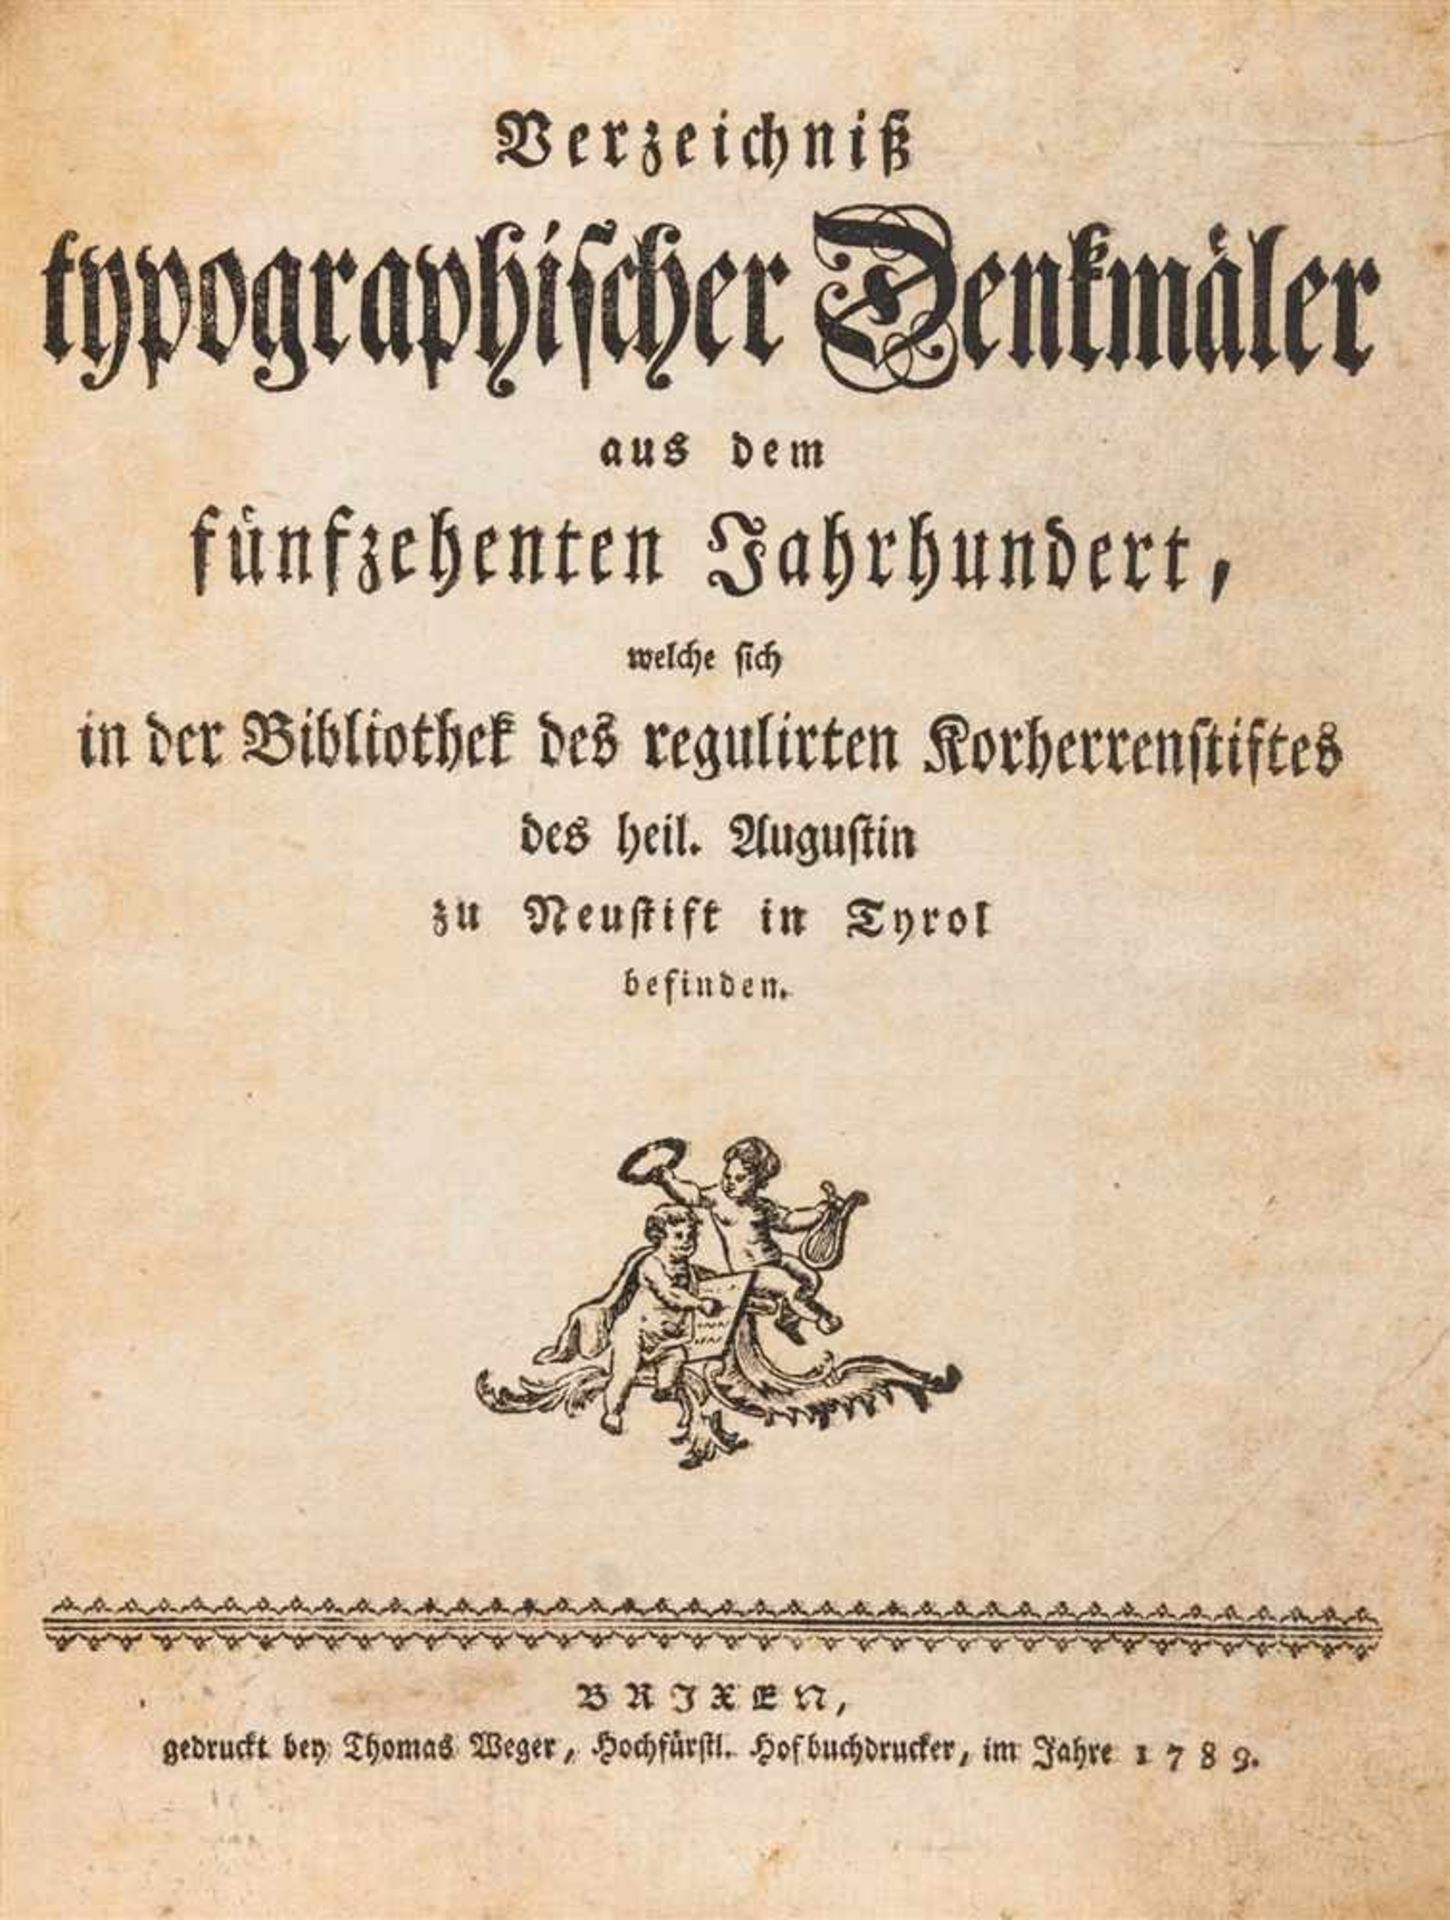 [Grass, Franz]: Verzeichniß typographischer Denkmäler aus dem fünfzehenten Jahrhundert, welche